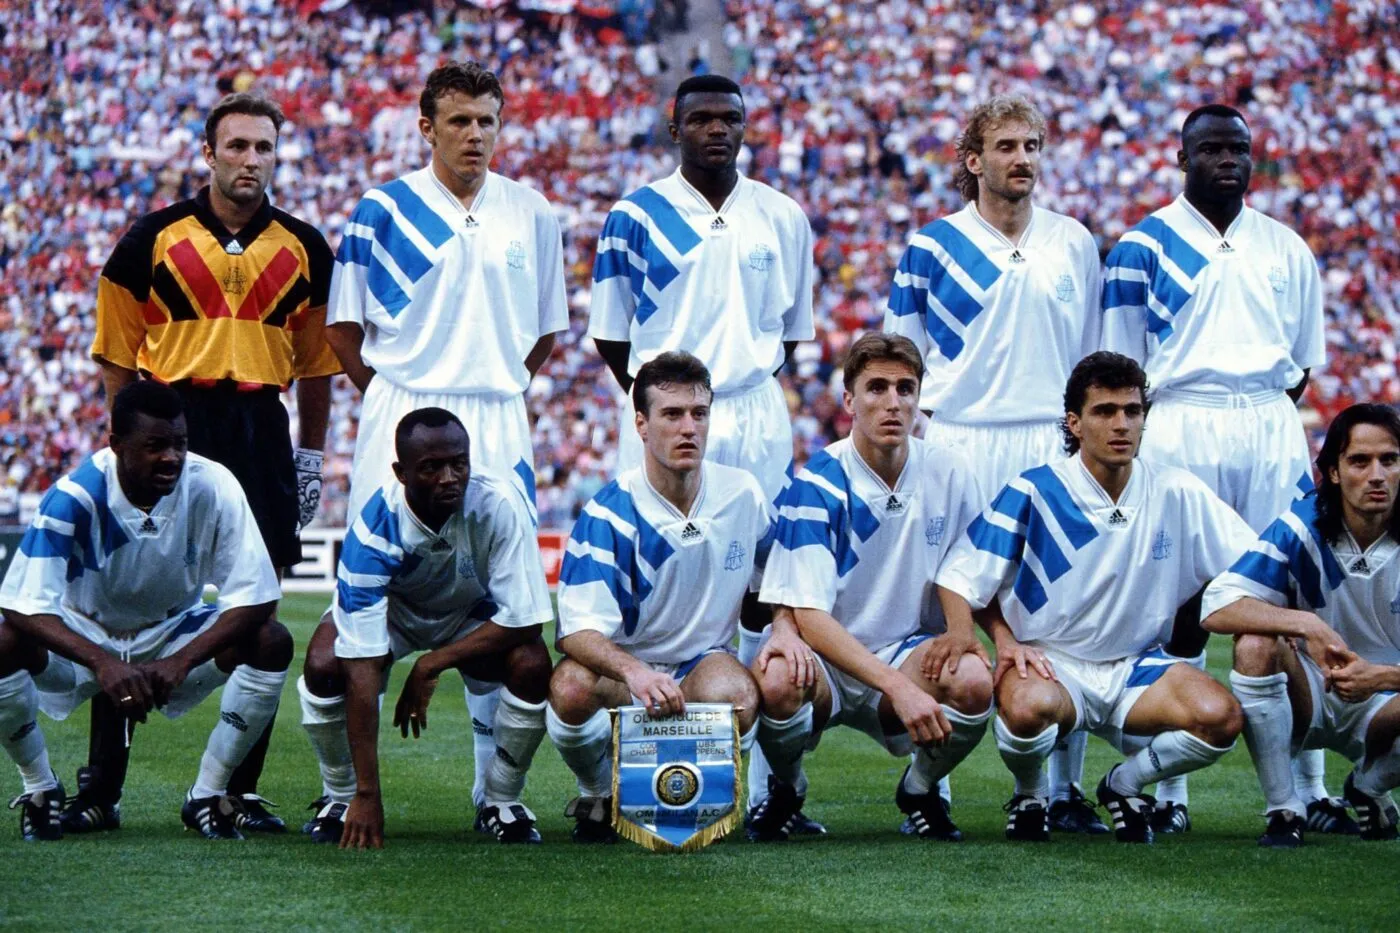 Equipe de Marseille - 26.05.1993 - Marseille / Milan AC - Finale Coupe d'Europe des Clubs Champions - Munich
Photo